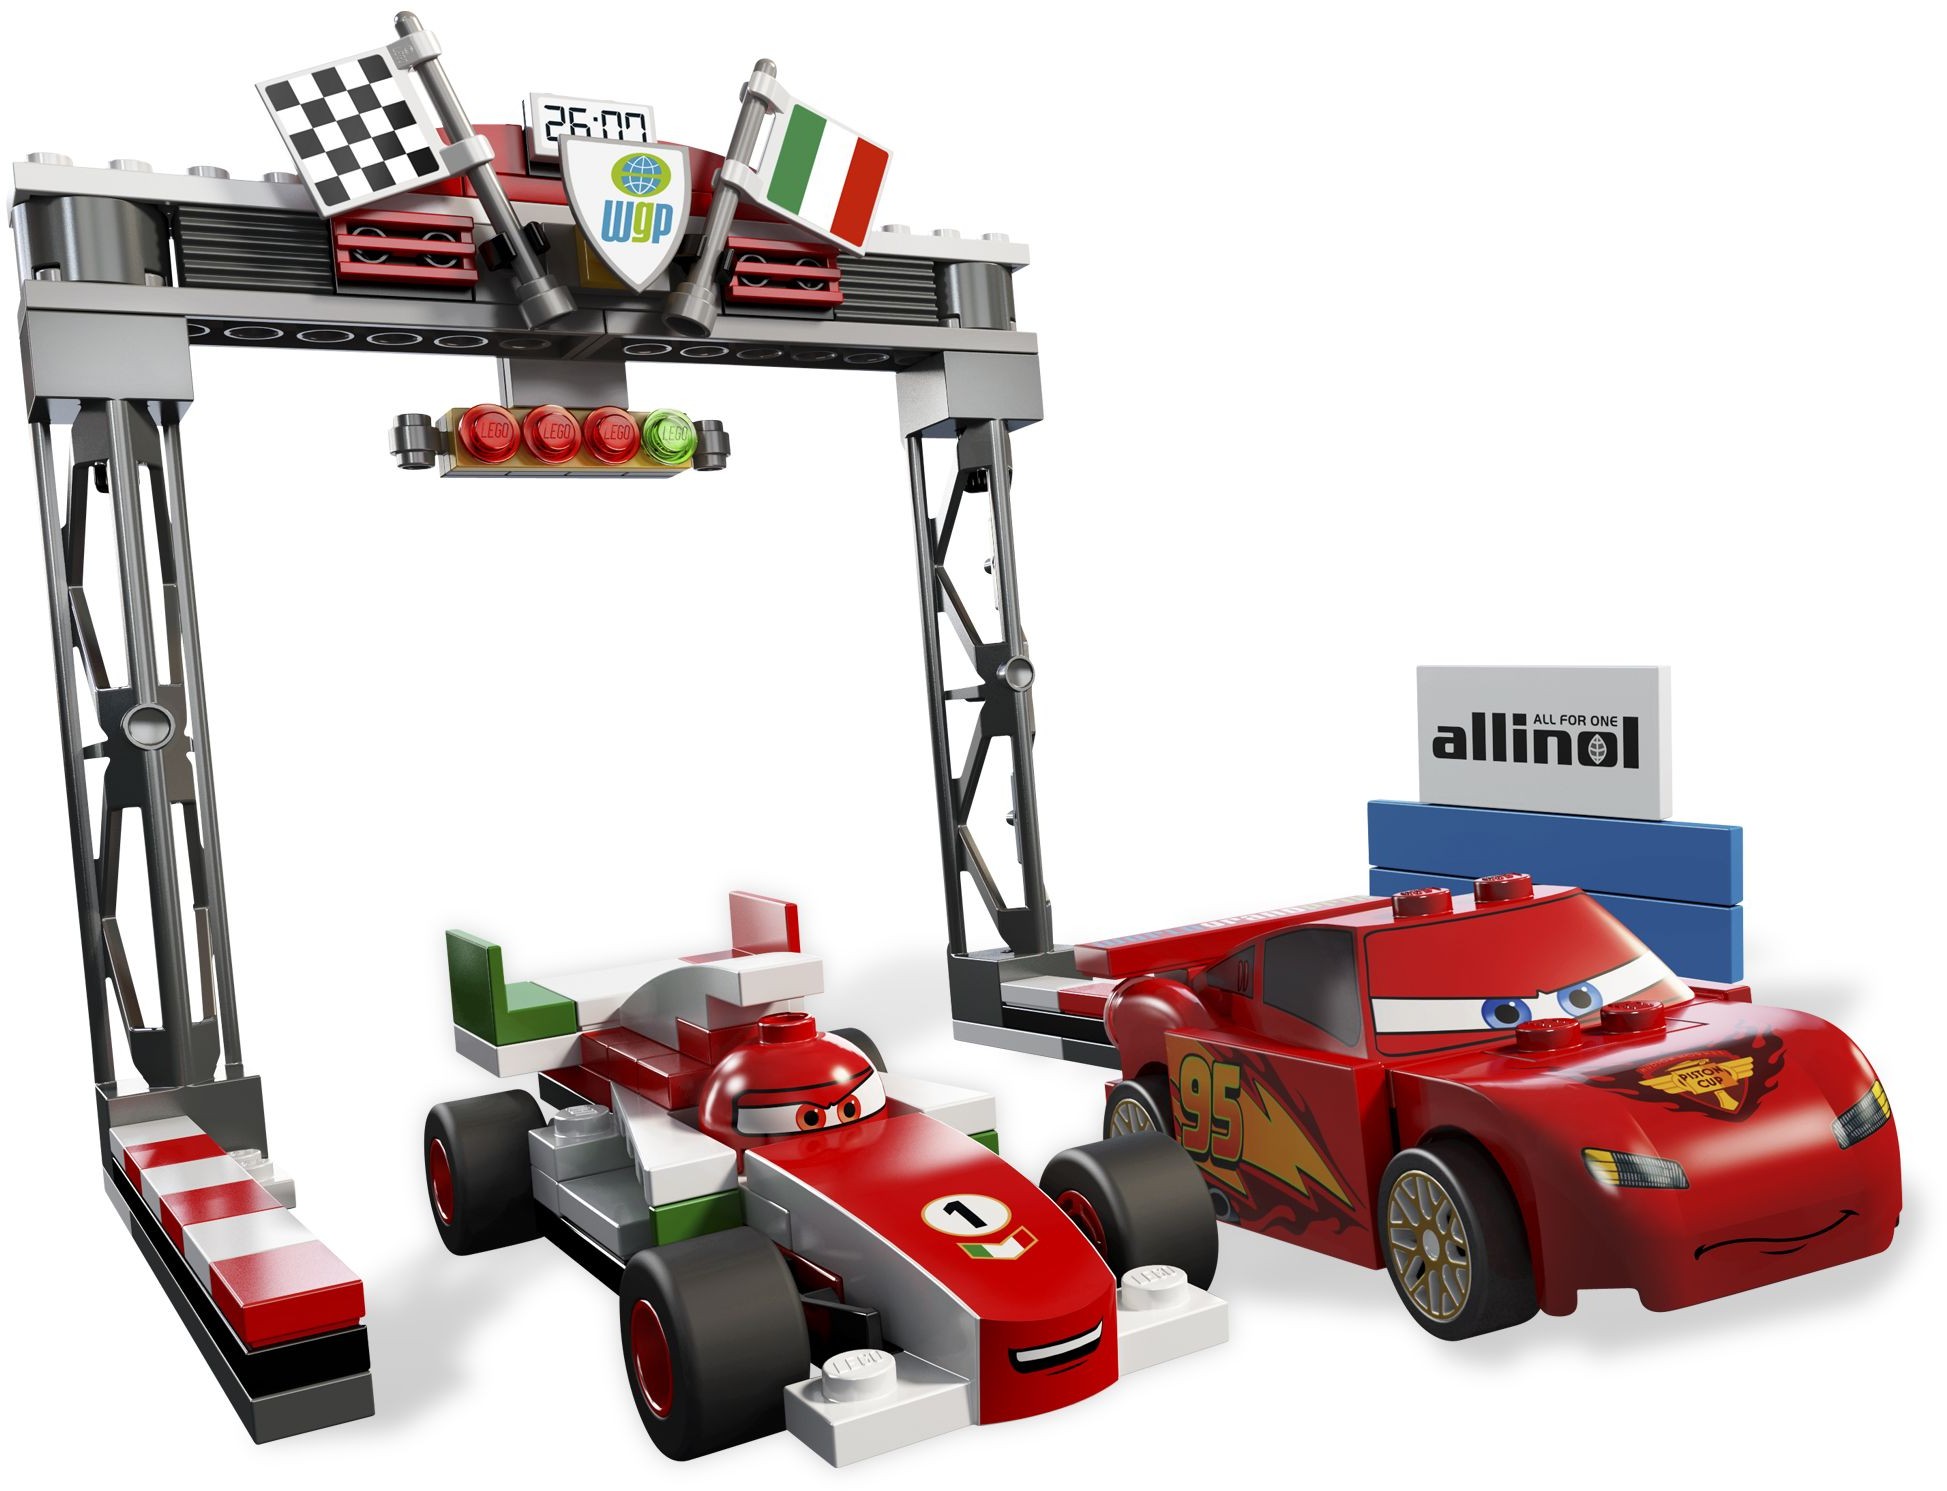 LEGO Cars Cars 2 |